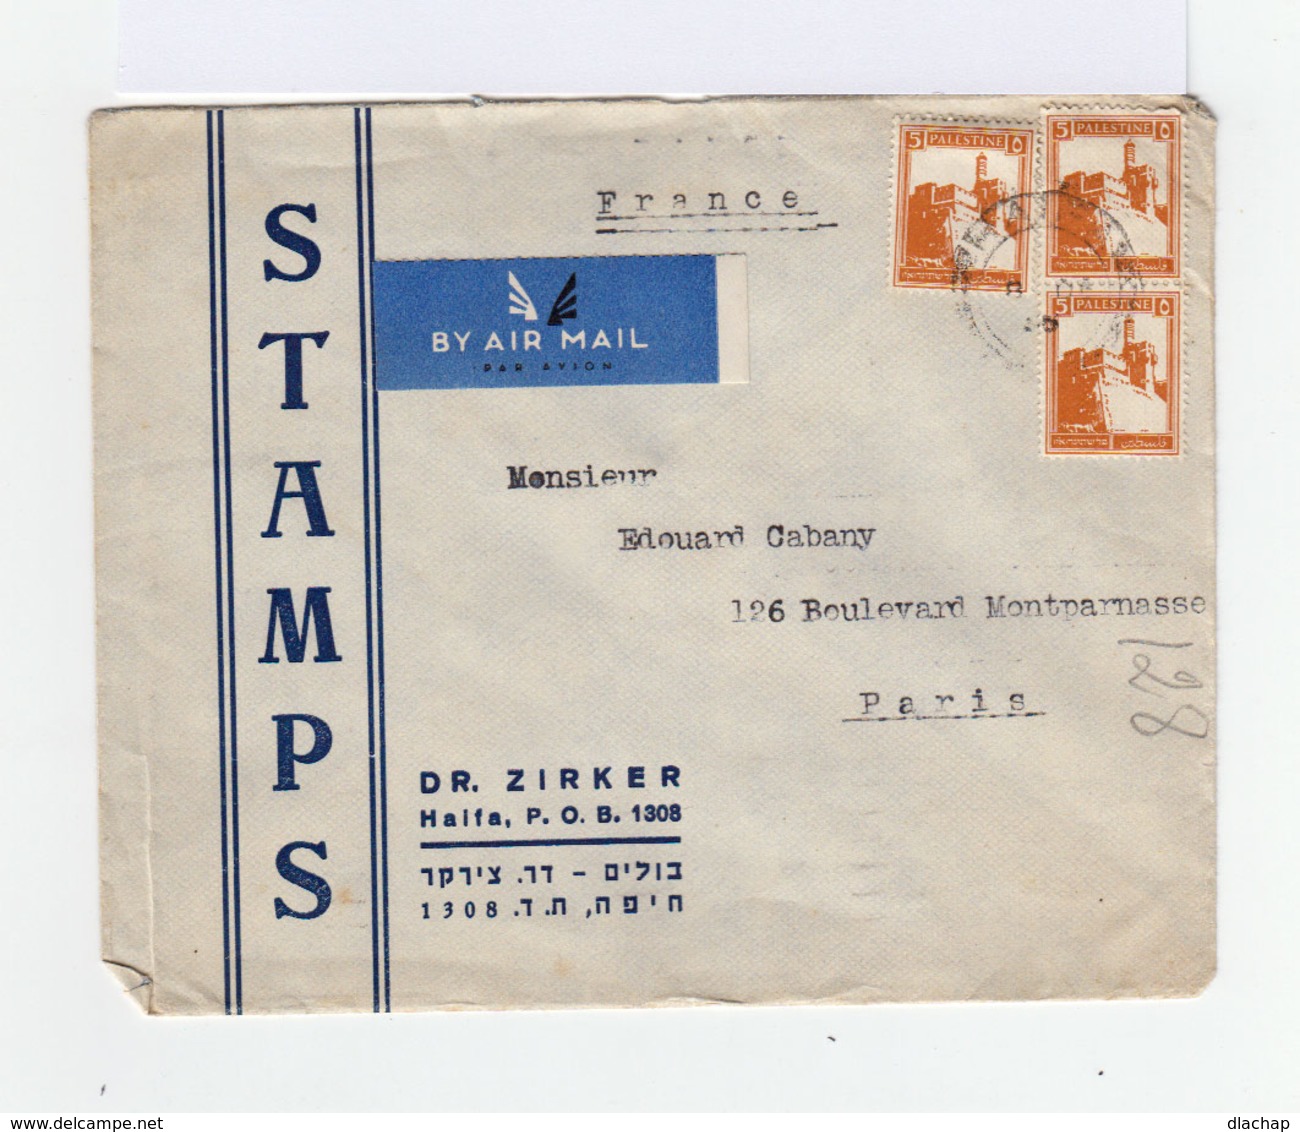 Sur Enveloppe By Air Mail De Palestine 1936 Paire De 5 C. Jaune Orange Citadelle De Jérusalem Et Un Timbre Idem. (787) - Palästina